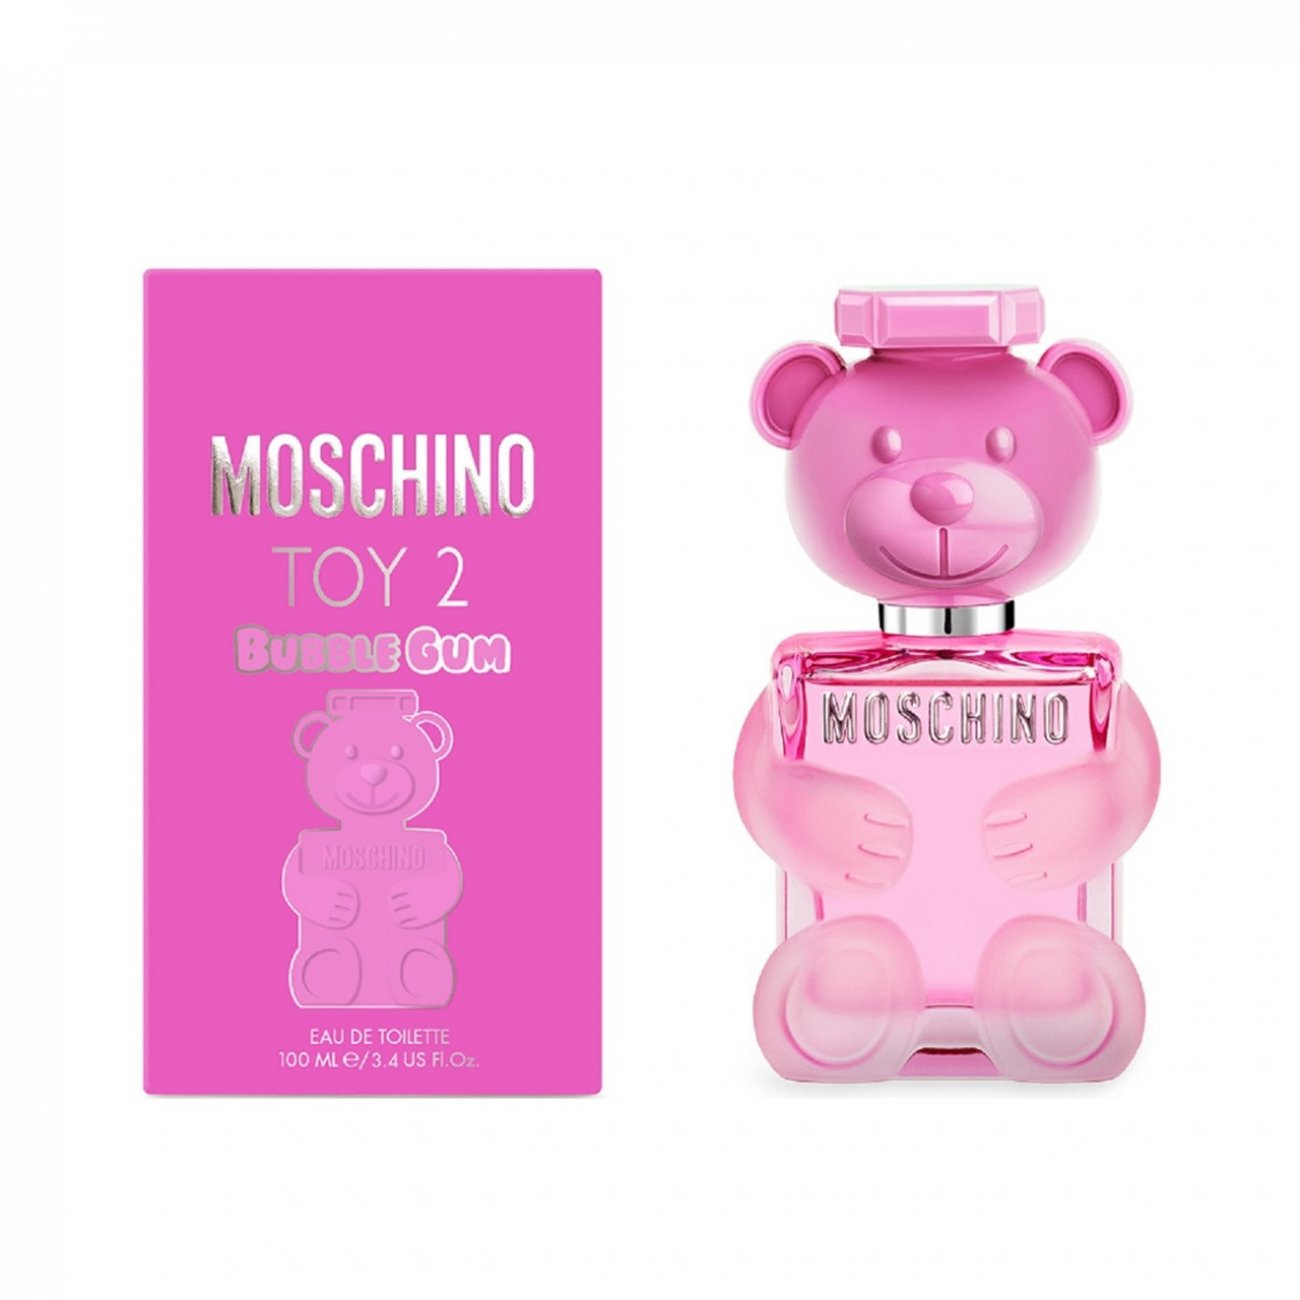 Buy Moschino Toy 2 Bubble Gum Eau de Toilette · USA